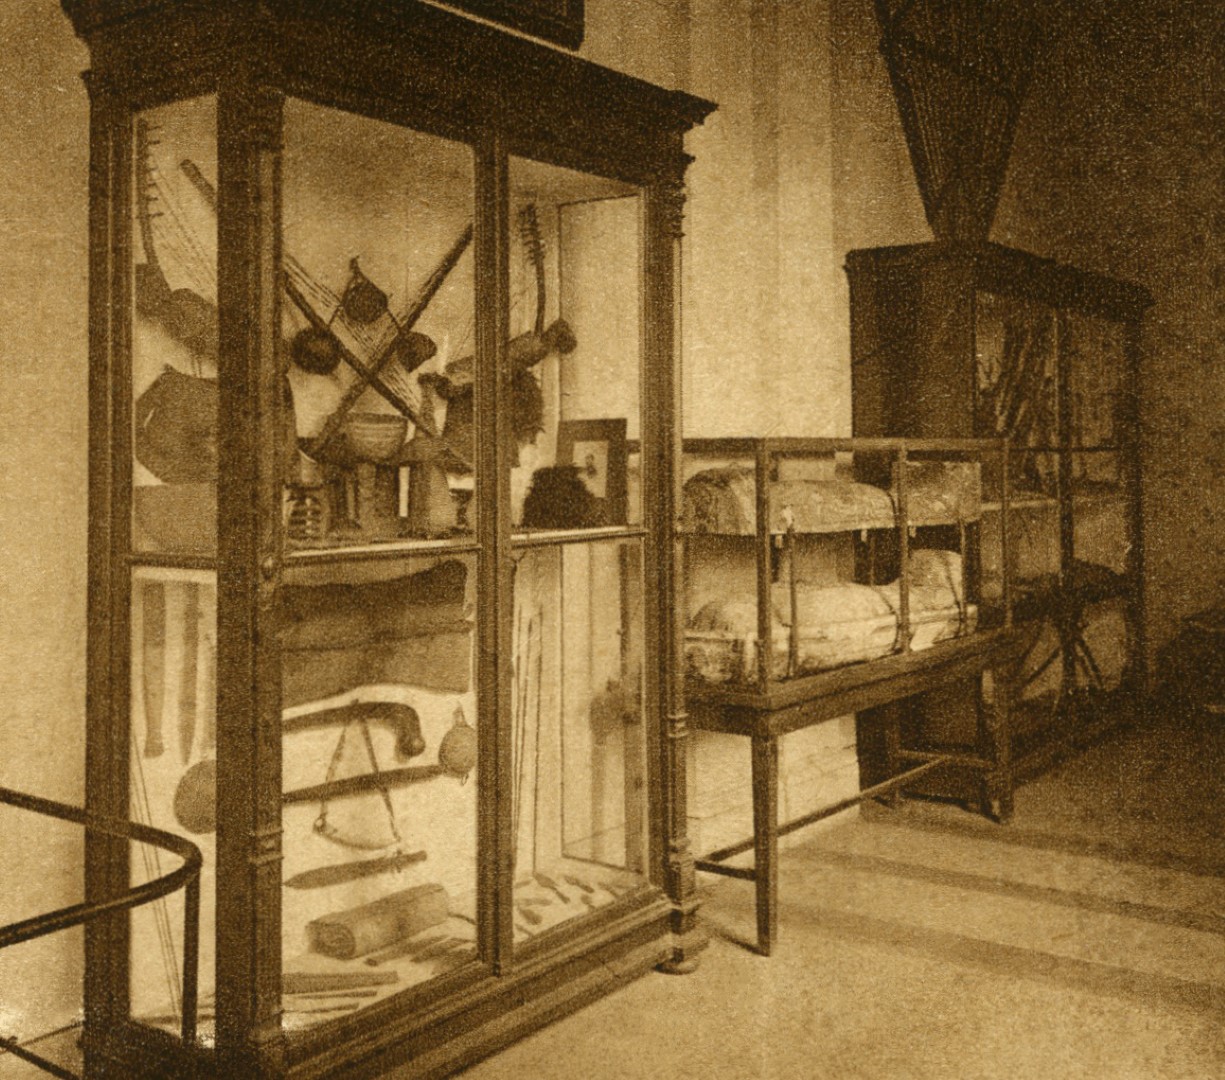 Vitrina z zunajevropskimi predmeti na razstavi v Etnografskem muzeju leta 1929. V vitrini so predmeti iz Sudana, ki sta jih pridobila Lavrin in Knoblehar, glasbila in nekaj orožja pa je iz Gabona pripeljal ladijski kapitan Perčič. Med afriškimi predmeti se je pomotoma znašel tudi leseni kij z okroglim glavičem iz Baragove donacije. Desno od vitrine je razstavljena egipčanska mumija z dvignjenim pokrovom lesene antropomorfne krste. (Ilustrirani Slovenec 5/48, 1. 12. 1929, str. 381, foto: dokumentacija SEM)